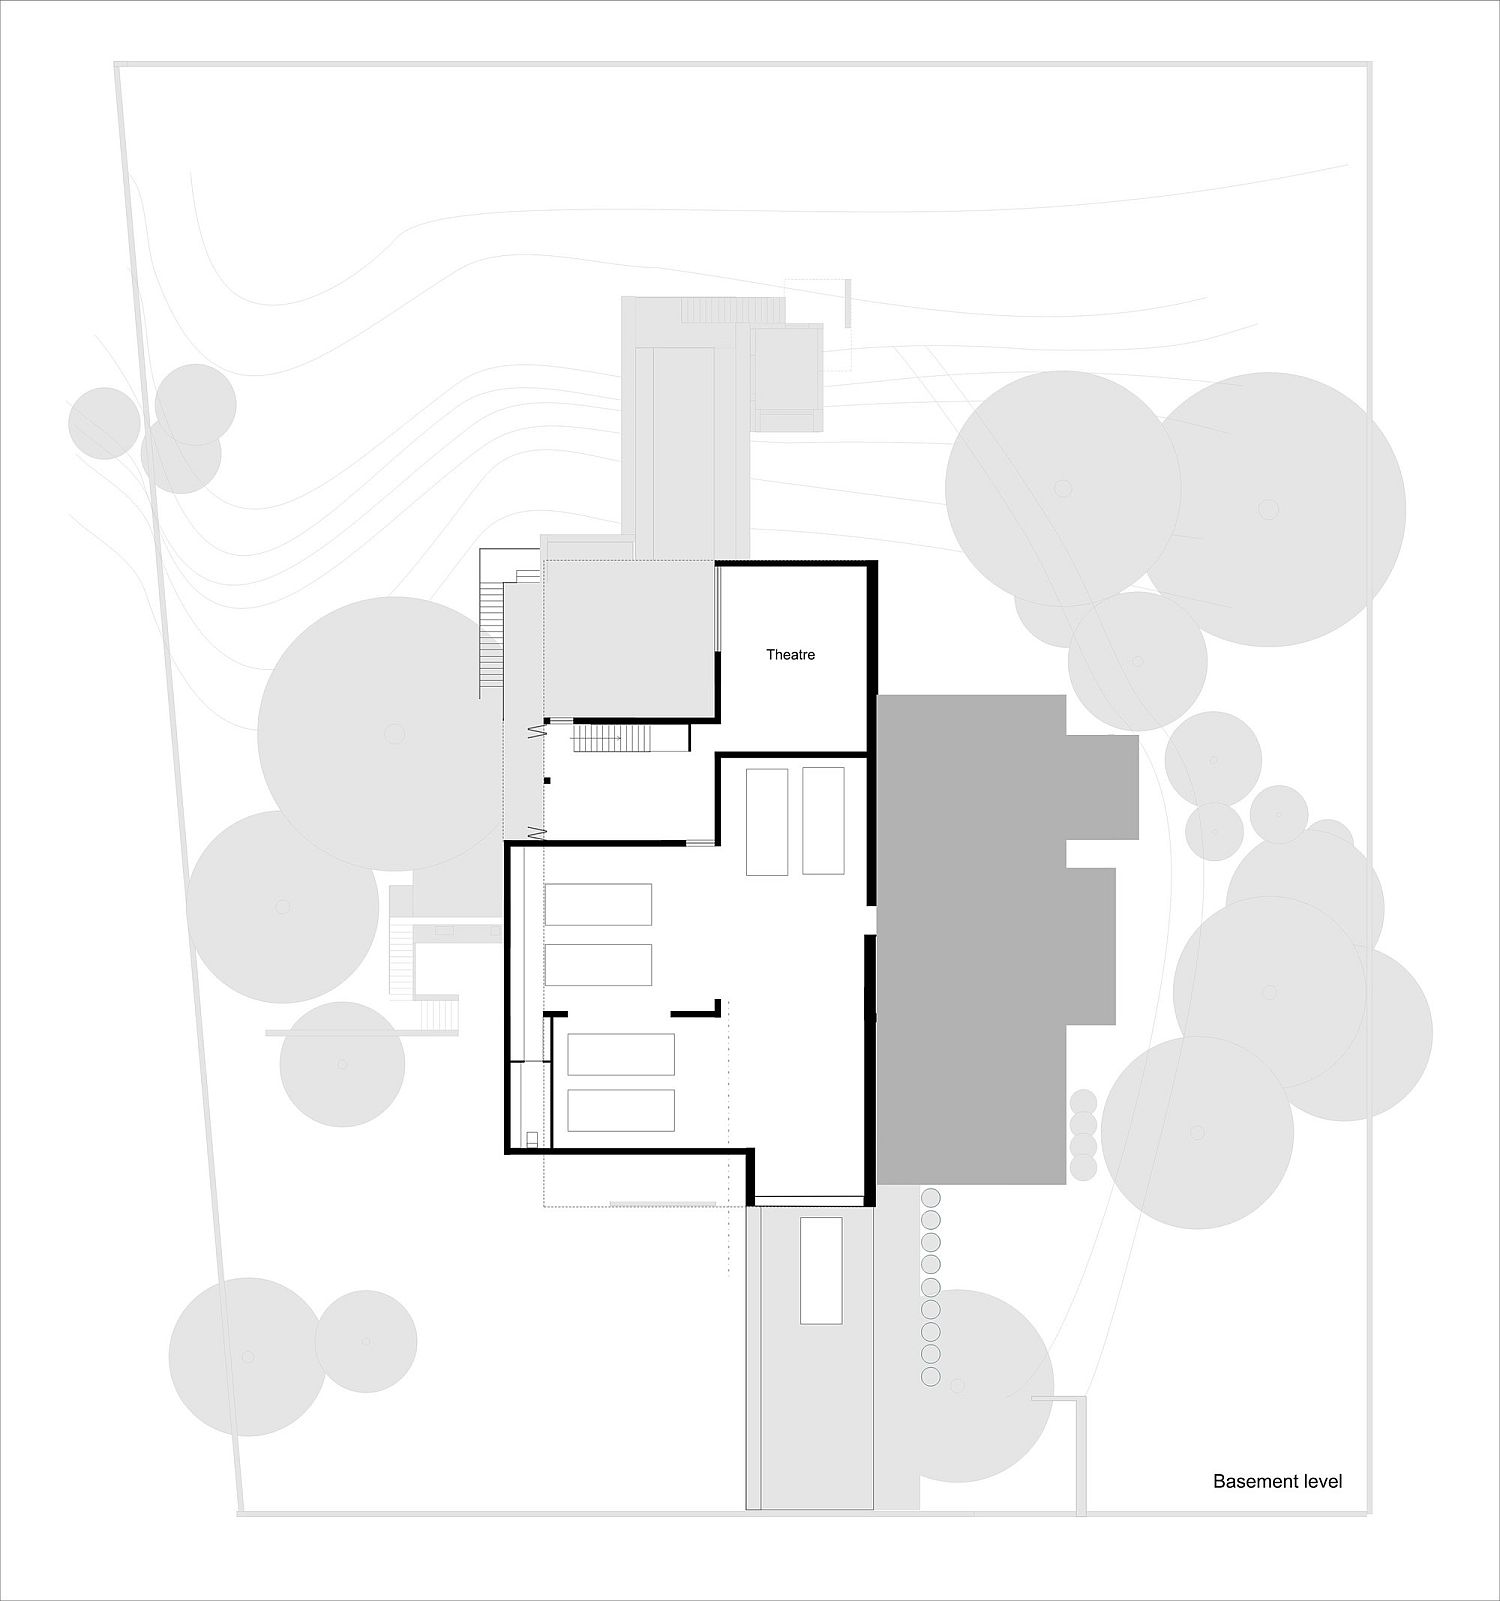 Basement floor plan of the modern Aussie home